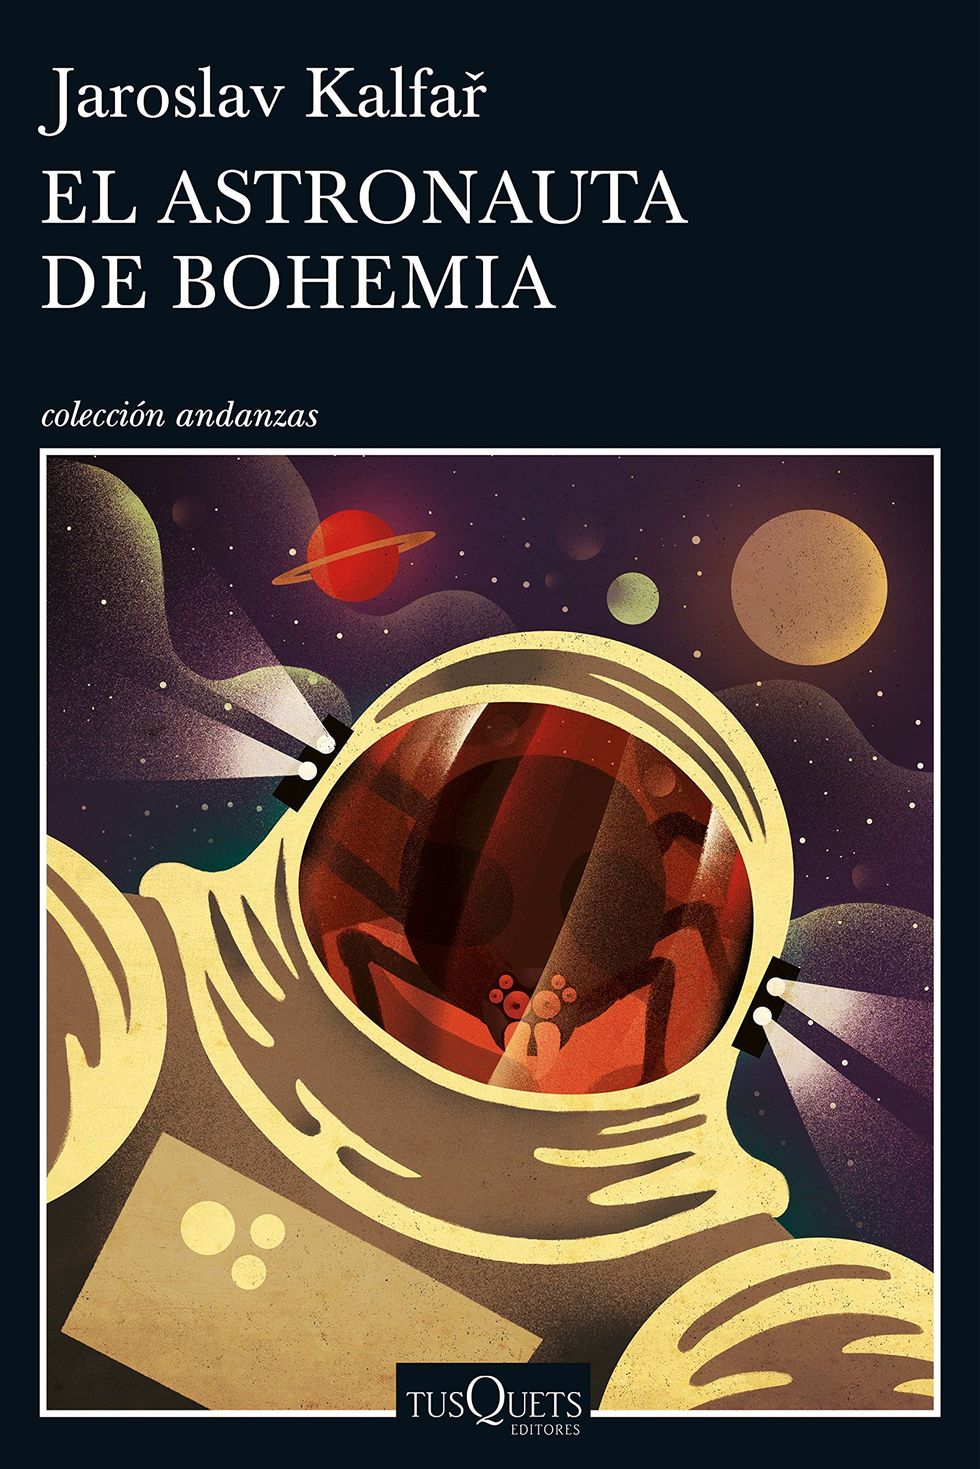 'El astronauta de Bohemia' de Jaroslav Kalfař